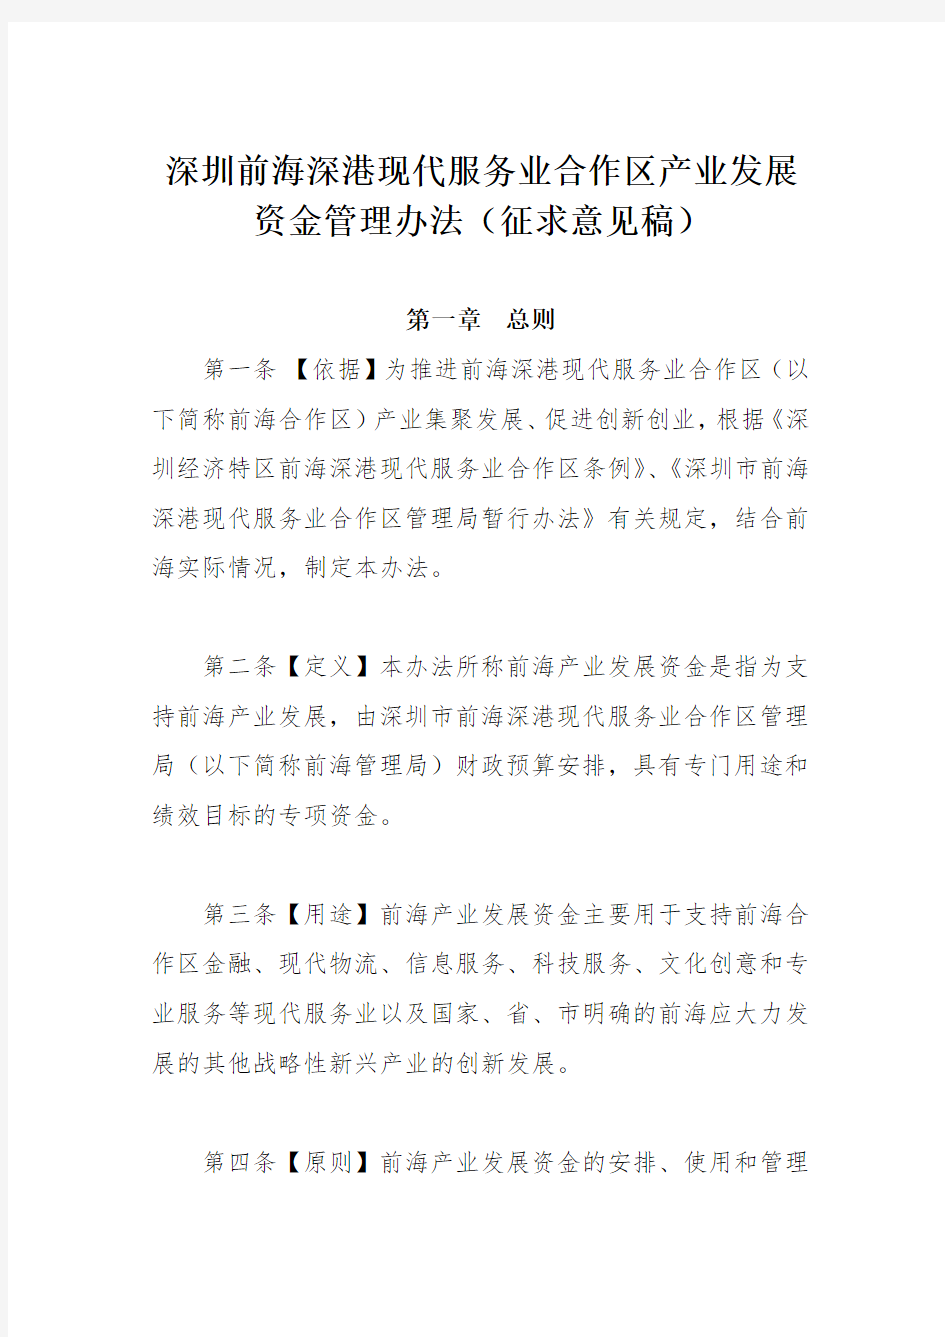 深圳前海深港现代服务业合作区产业发展资金管理办法(征求